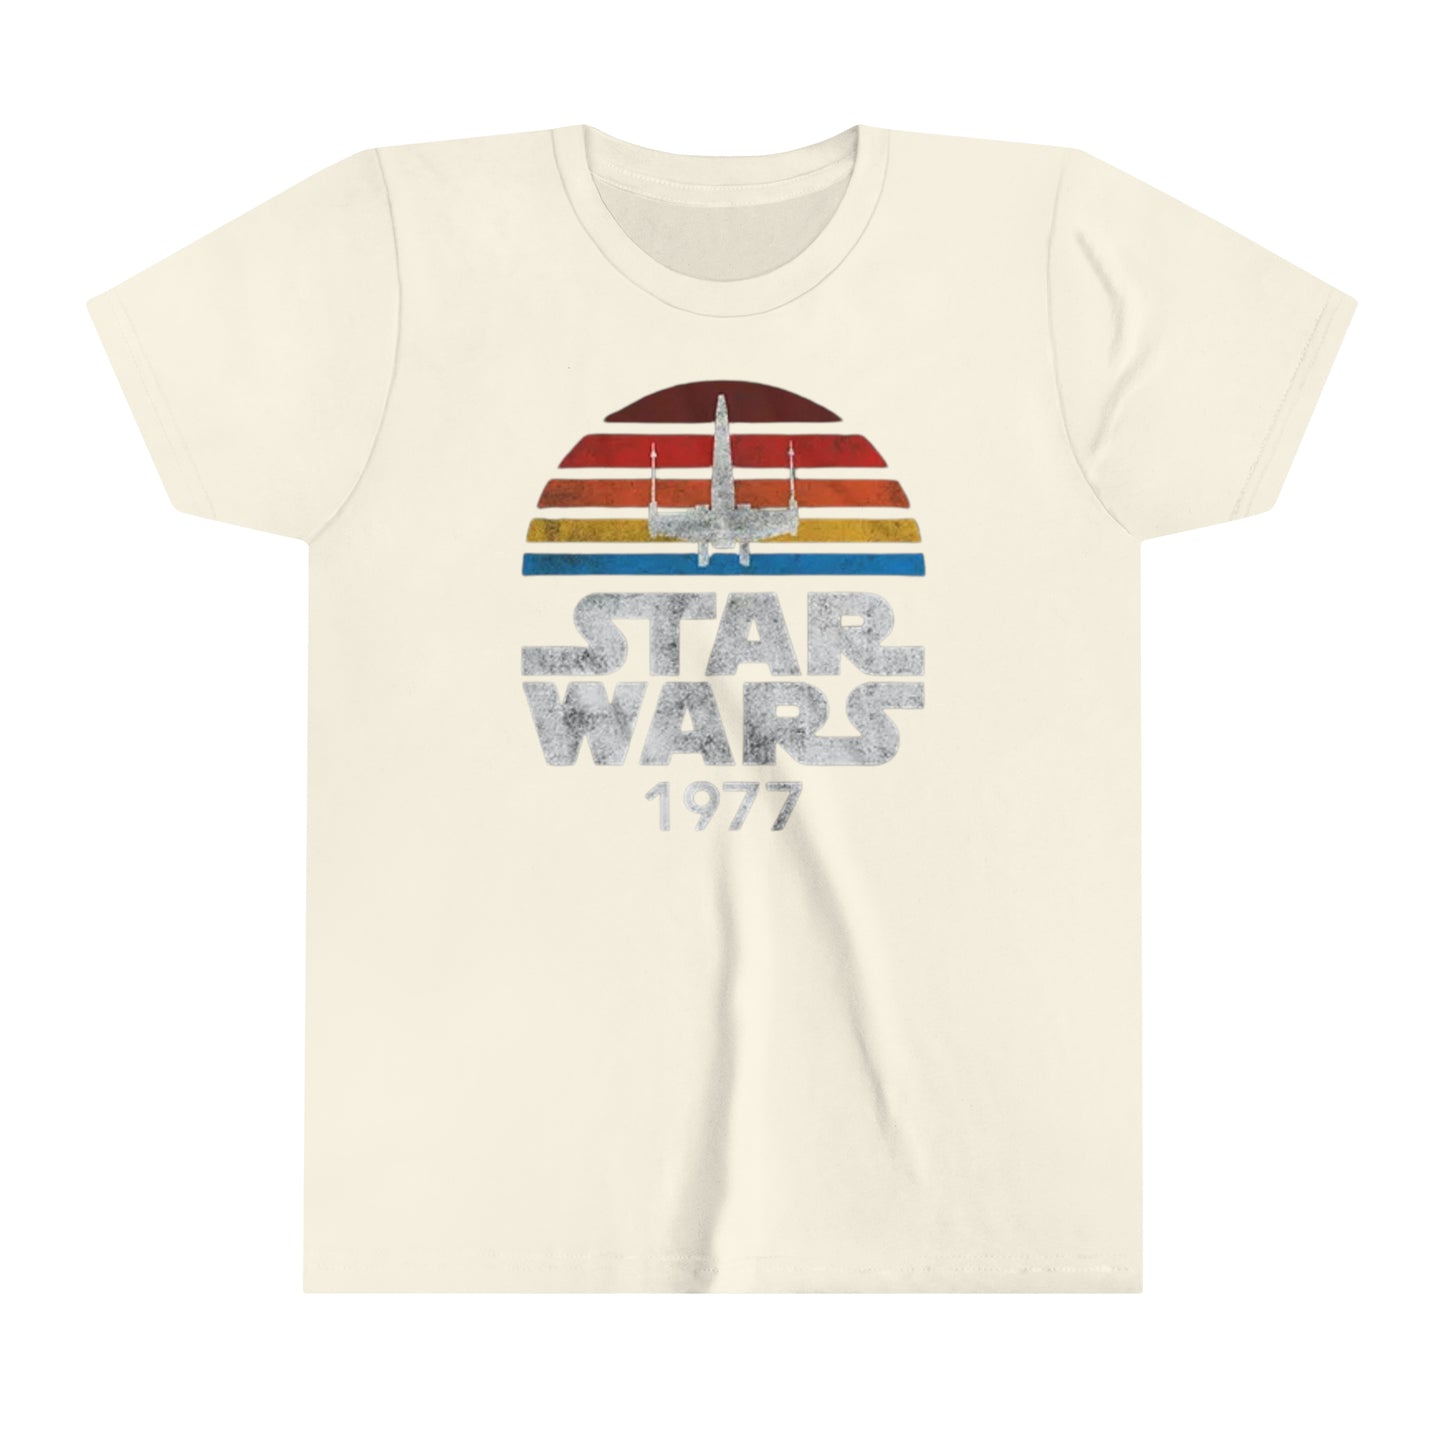 Star Wars 1977 - Youth Short Sleeve Tee